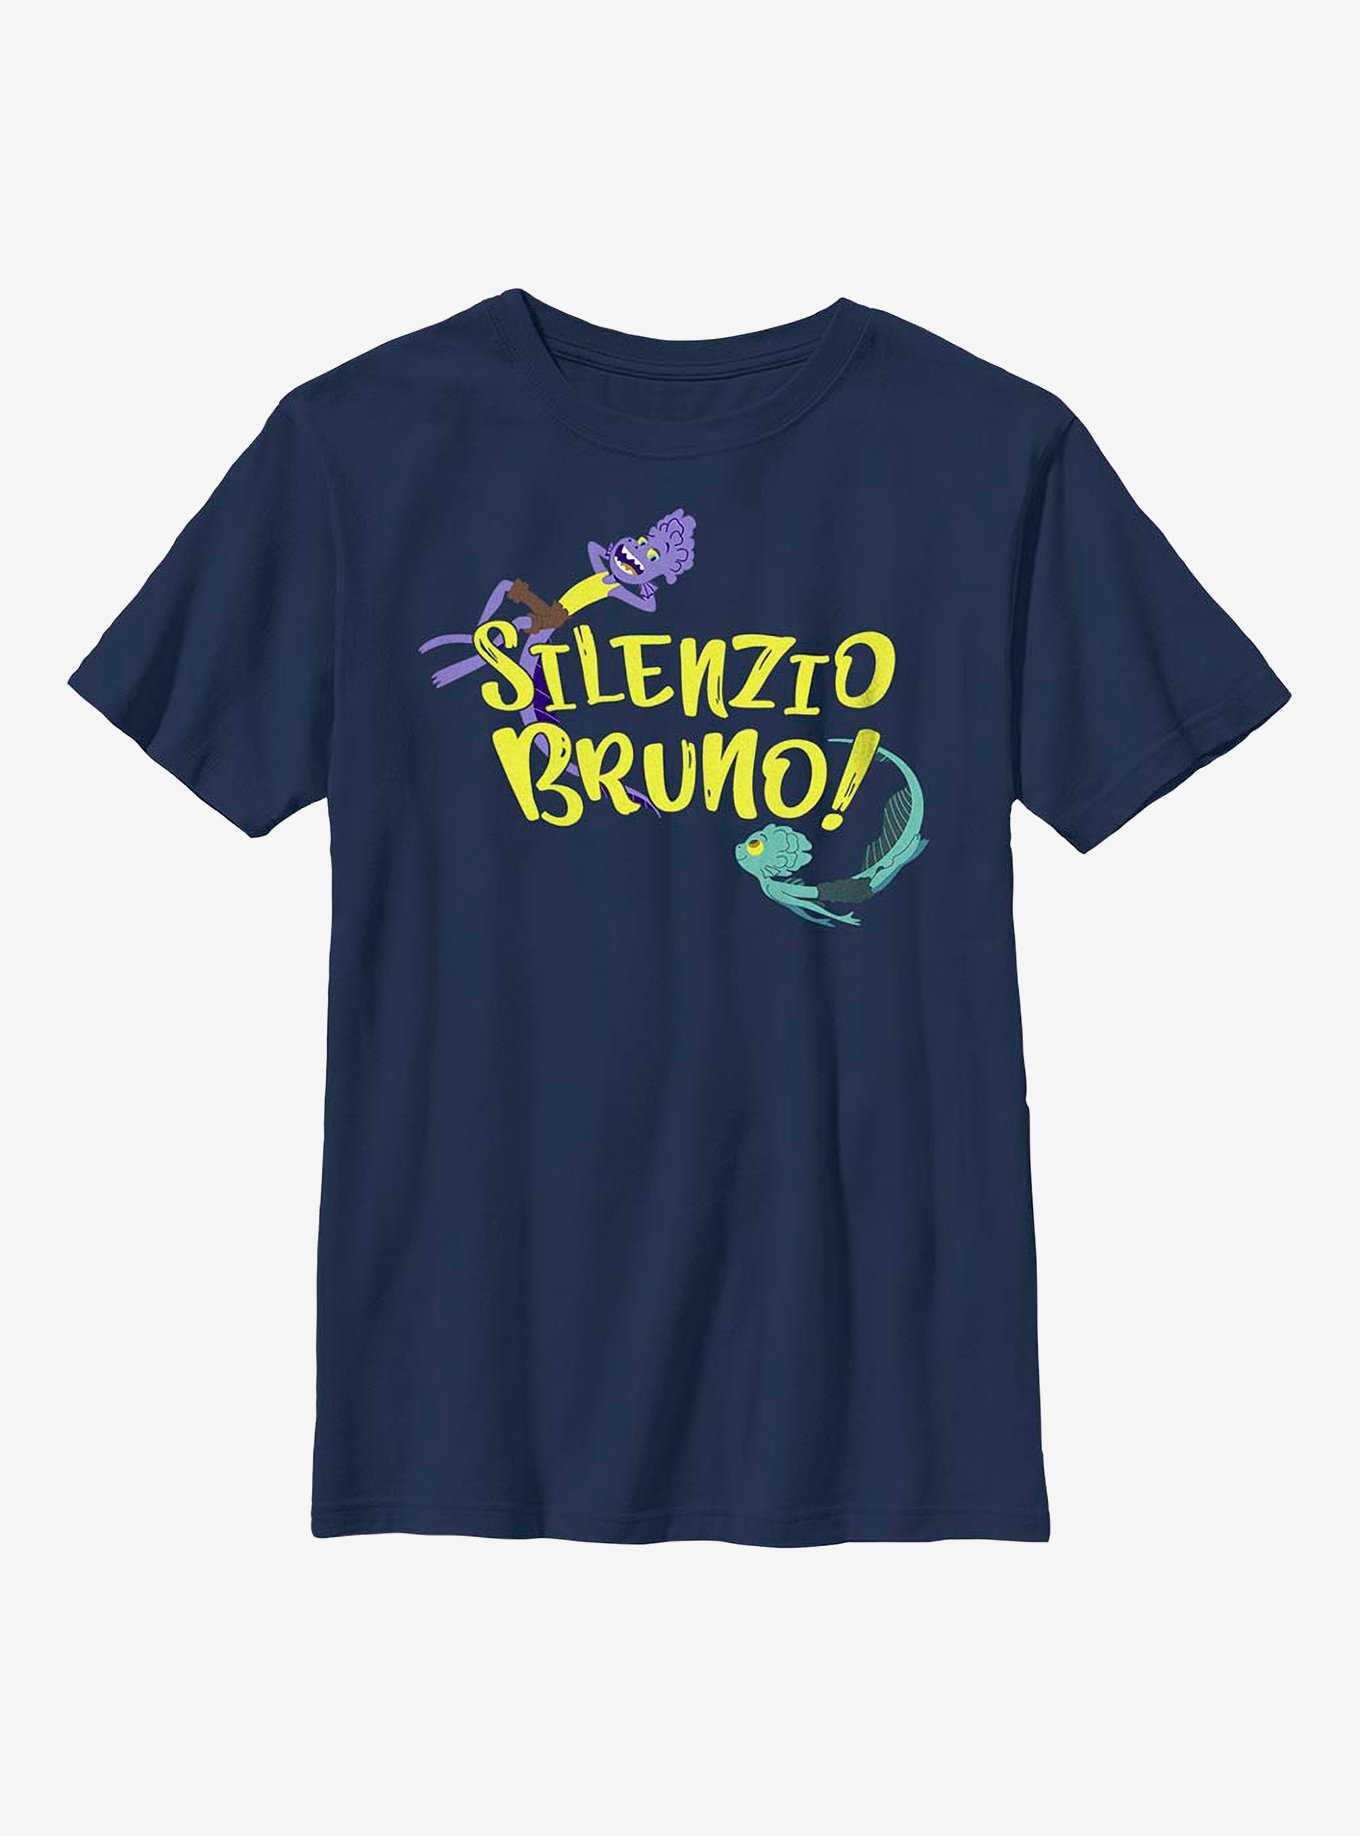 Disney Pixar Luca Silenzio Bruno! Swimming Youth T-Shirt, , hi-res